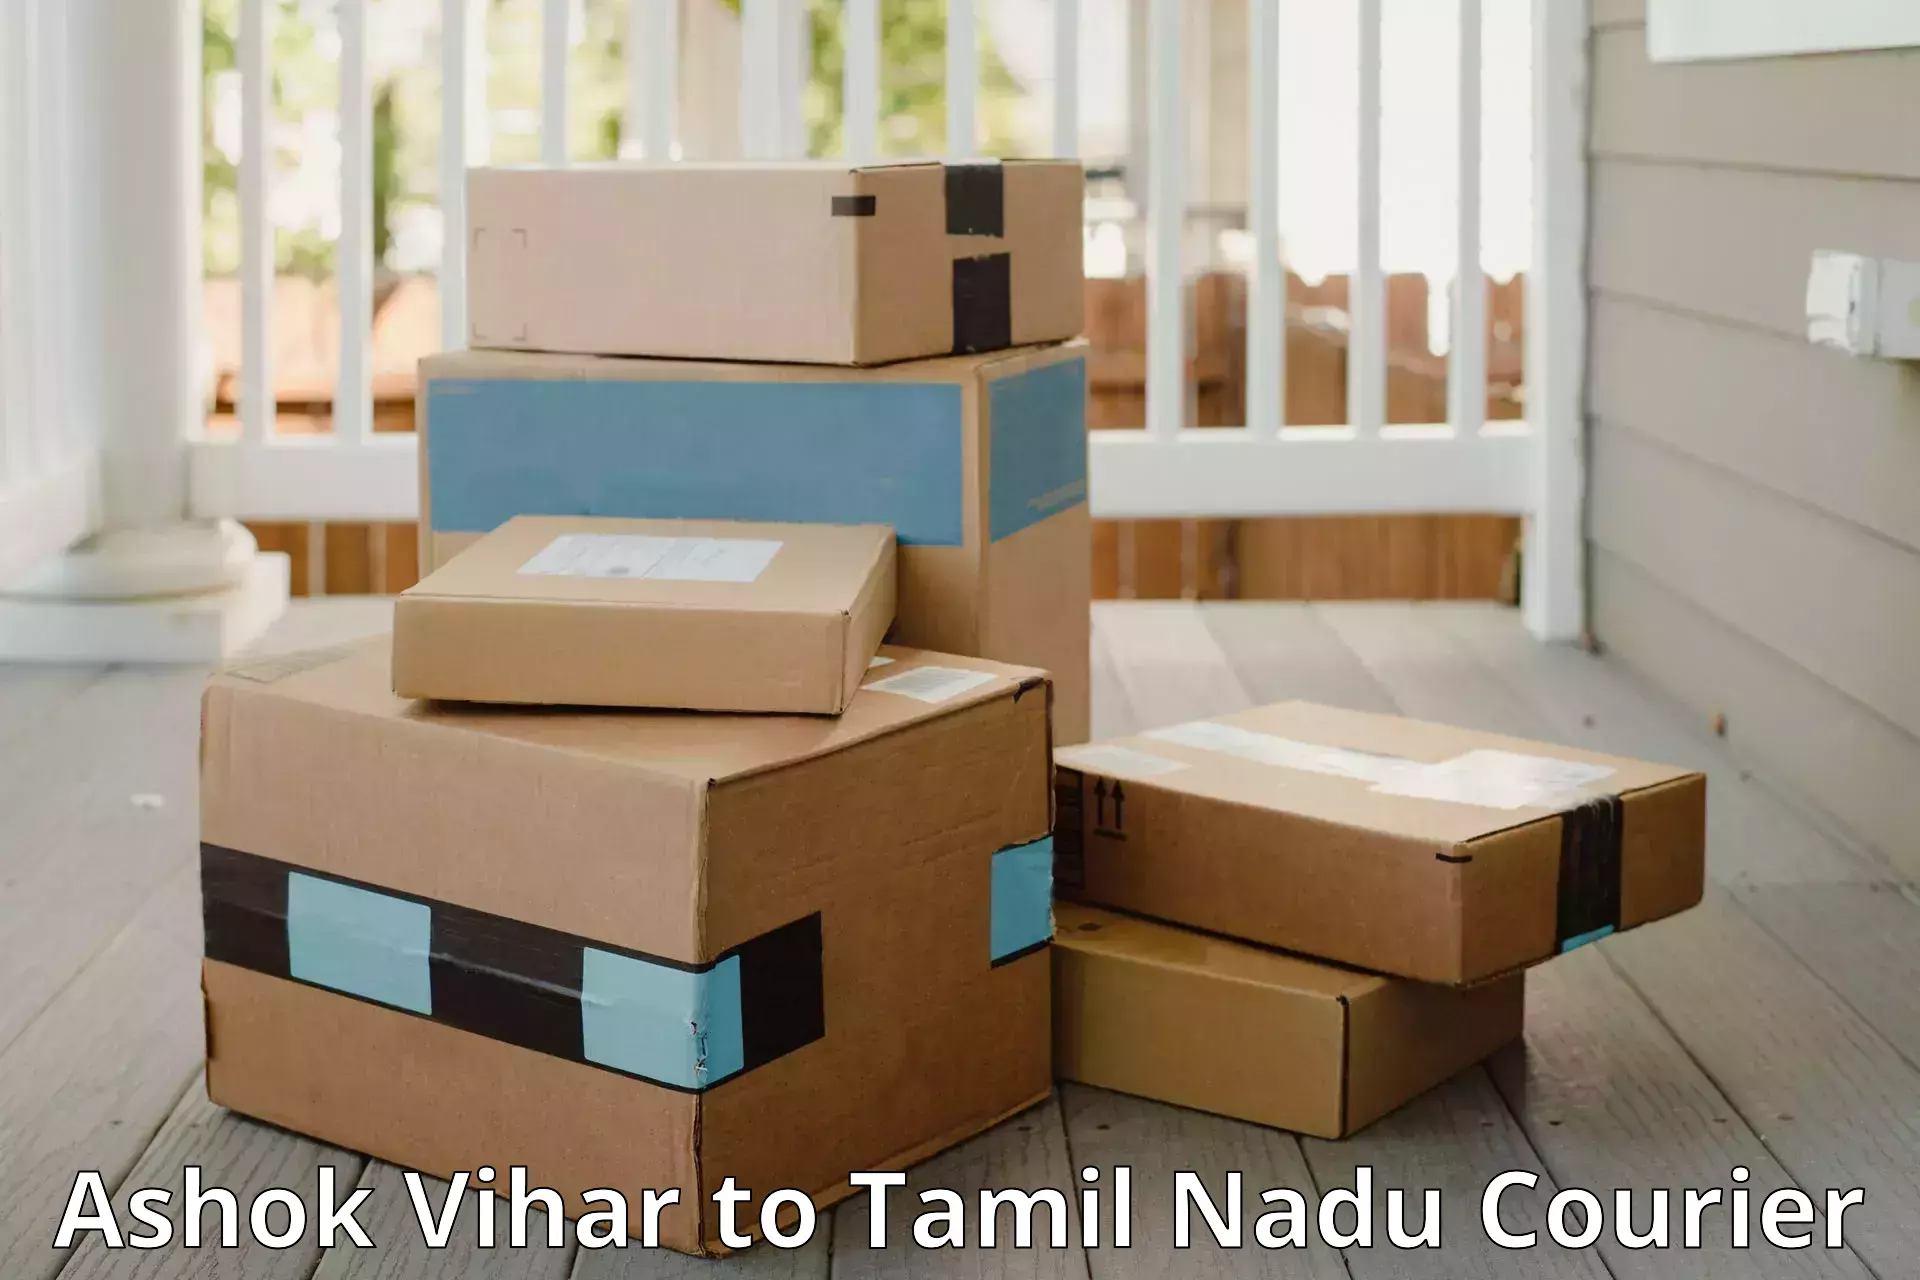 Baggage delivery management Ashok Vihar to Tamil Nadu